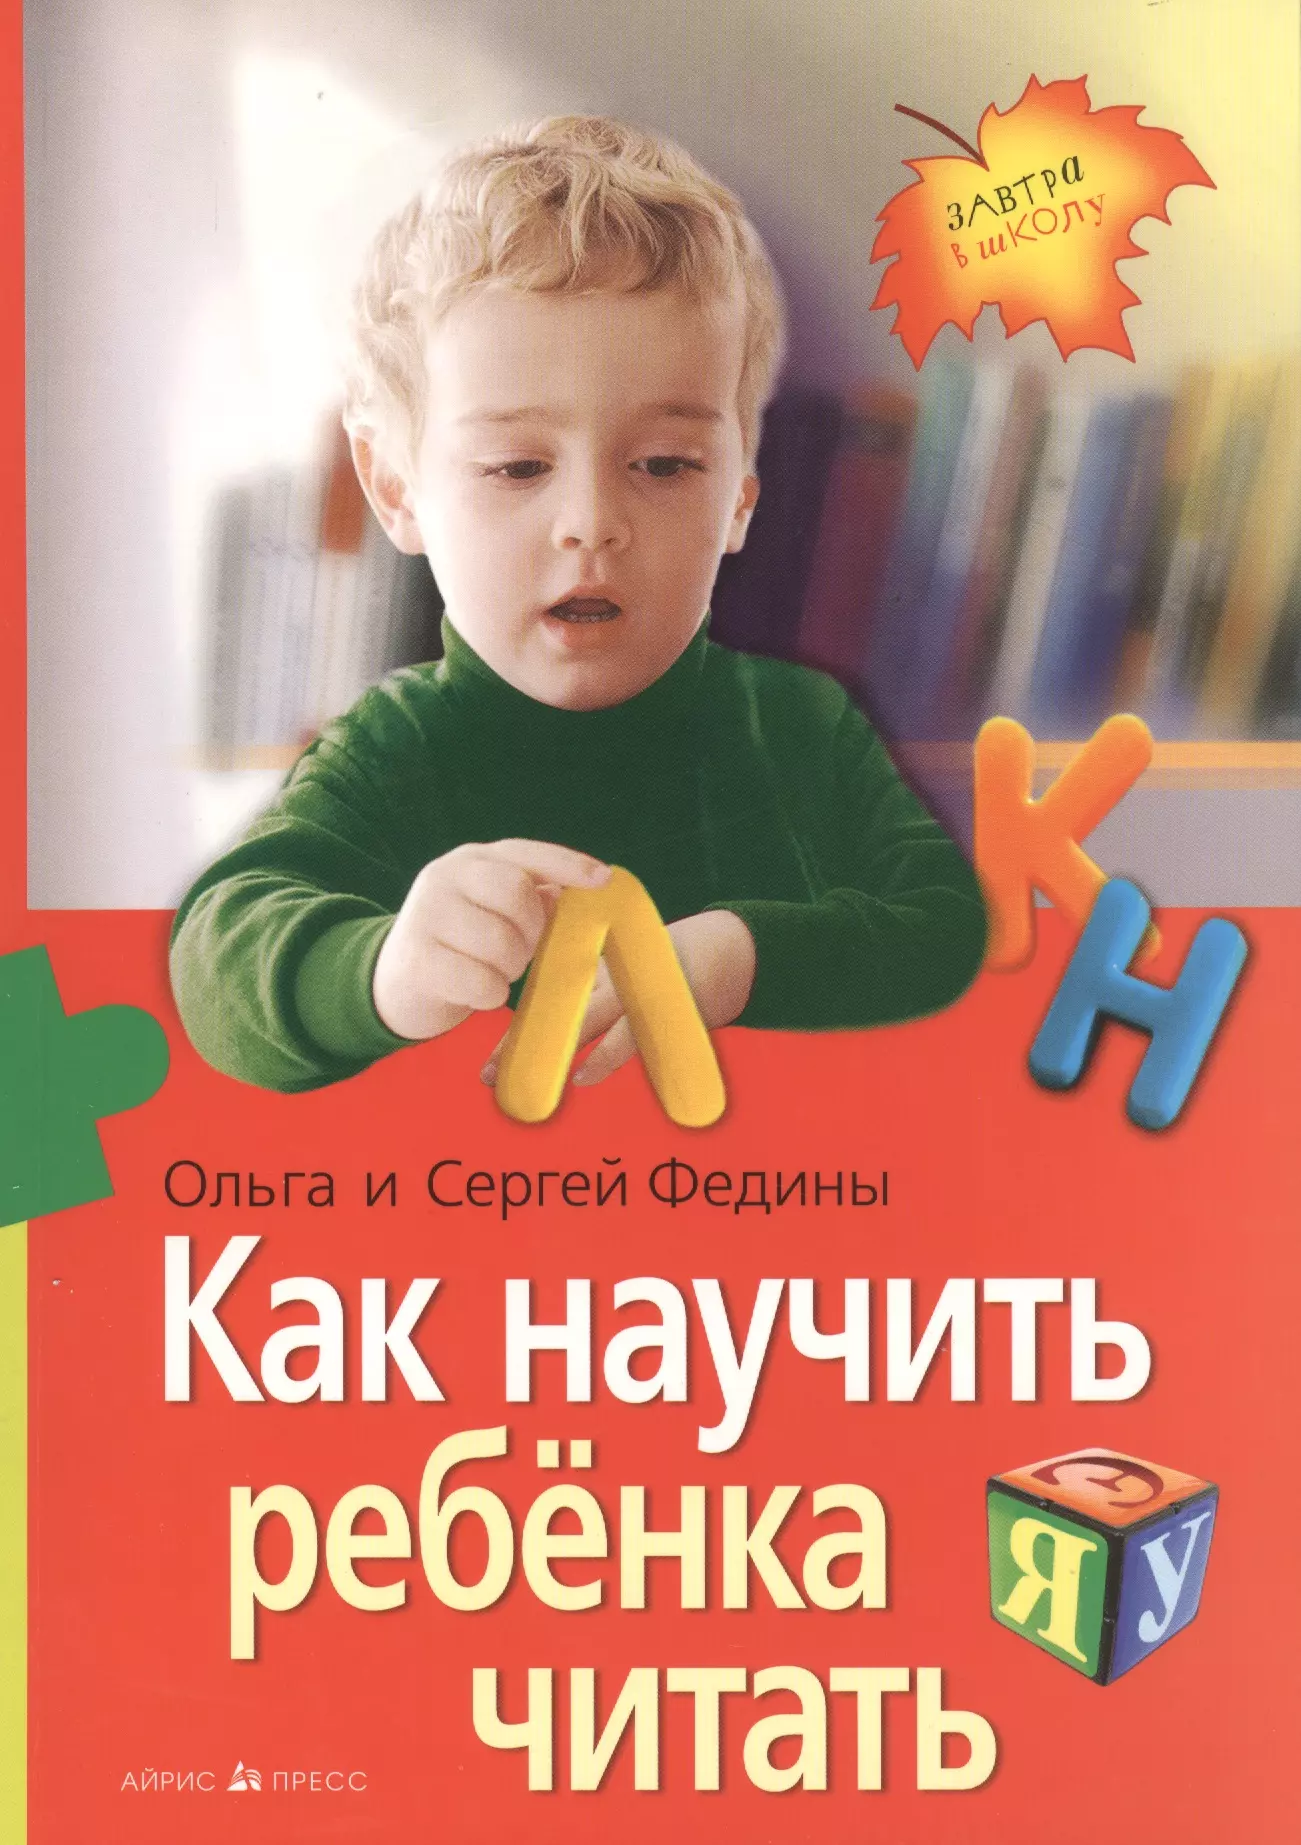 Федин Сергей Николаевич - Как научить ребенка читать